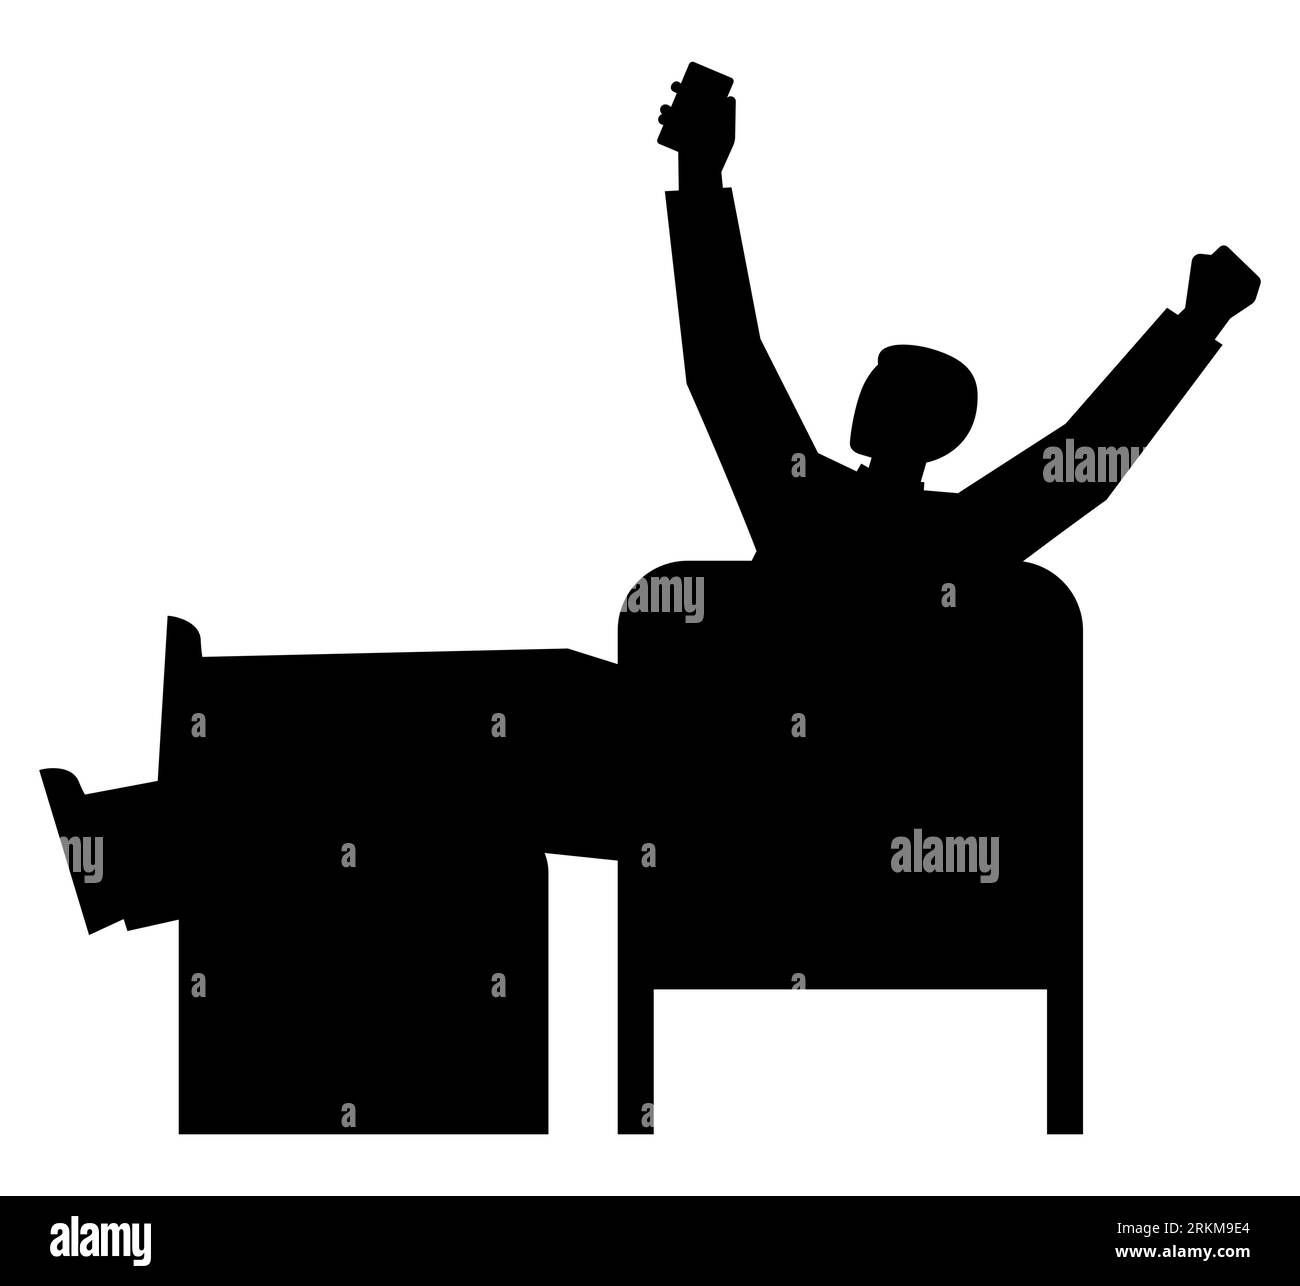 Schwarze Silhouette eines Mannes, der auf einem Stuhl sitzt, ein Mann, der im Fernsehen ein Match beobachtet, ein jubelnder Mann, der Fernsehen schaut, Vektorillustration isoliert auf weiß Stock Vektor